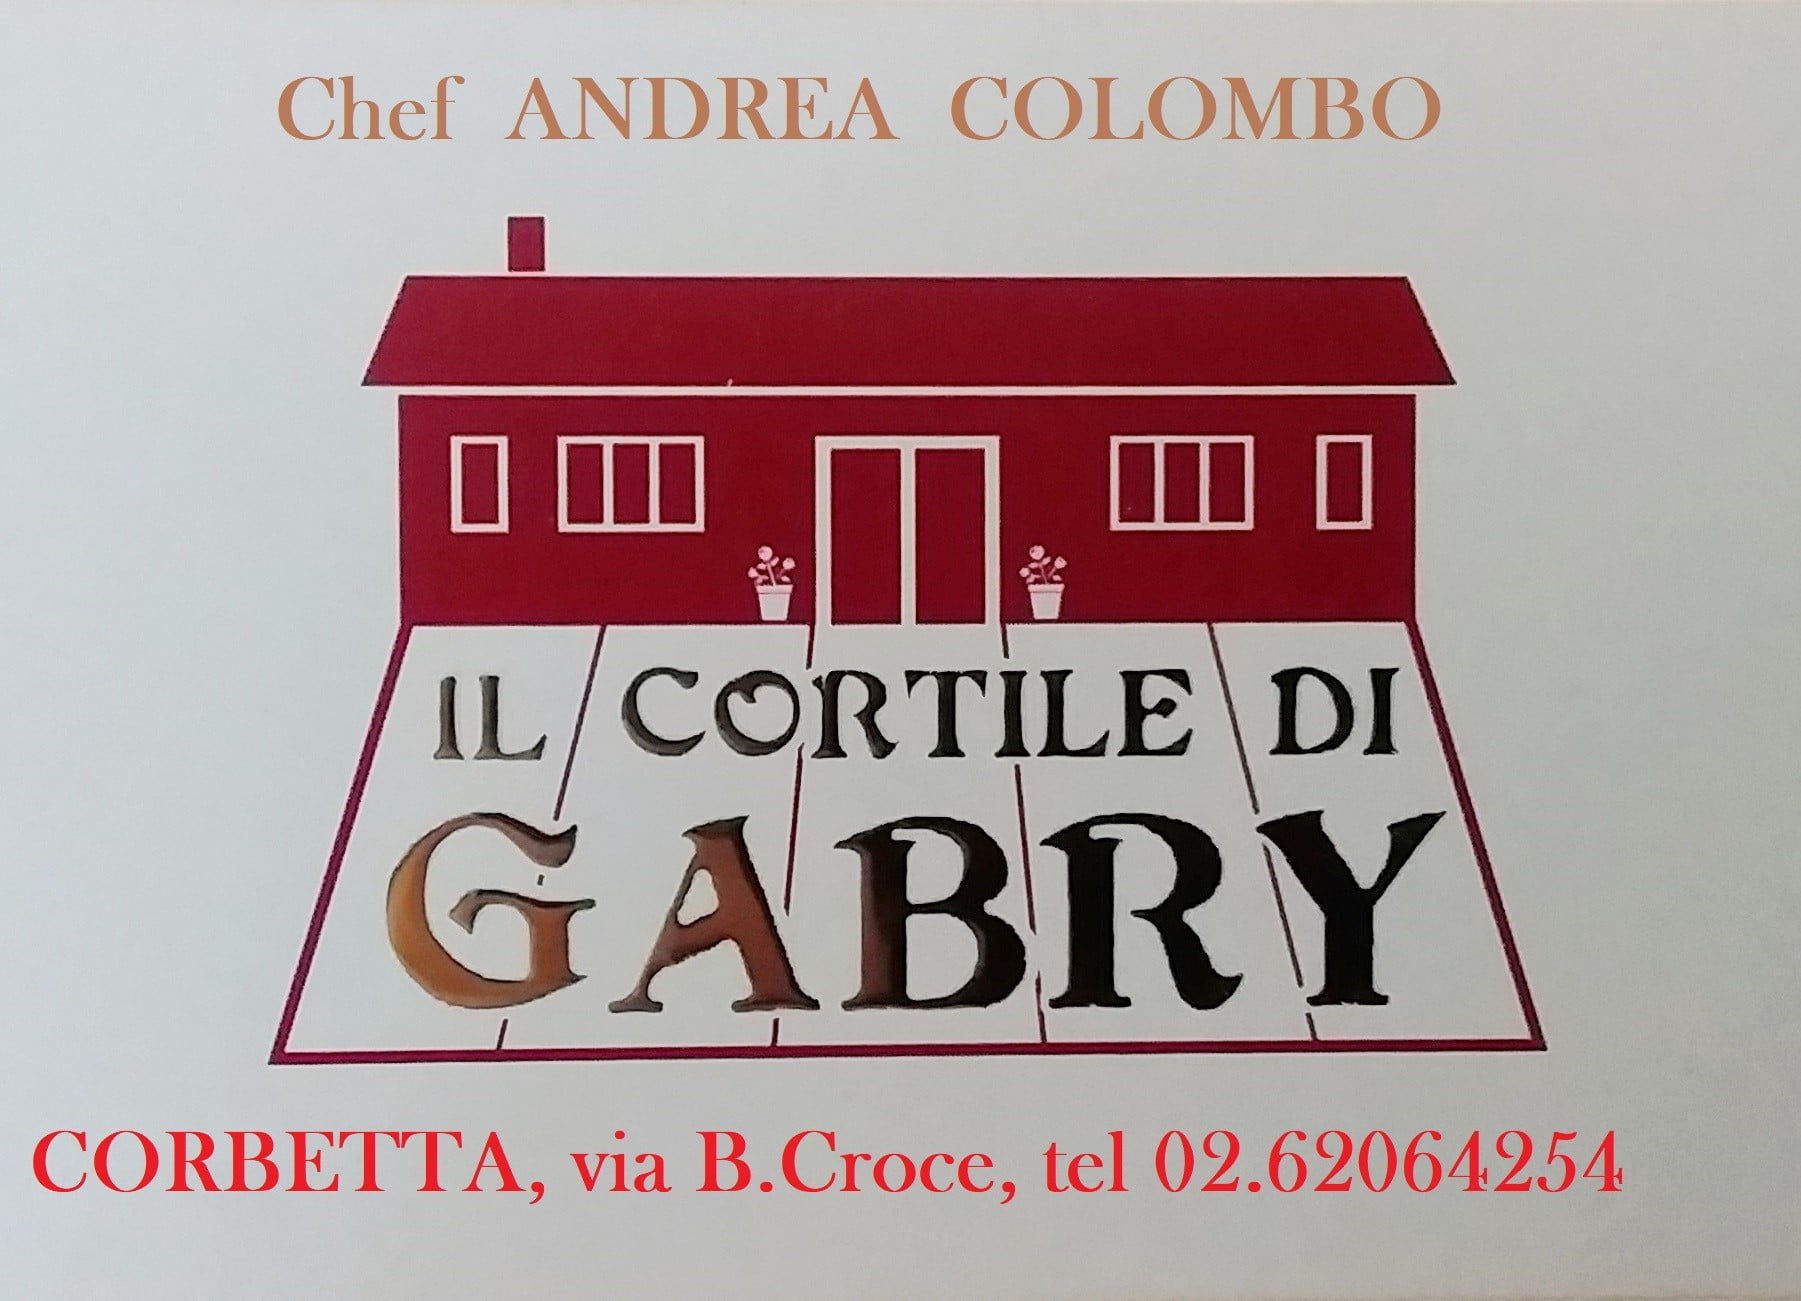 . “Il cortile di Gabry” apre le porte all’asporto anche per cerimonie, colazione, pranzi e menù fisso. A Corbetta - 13/11/2020